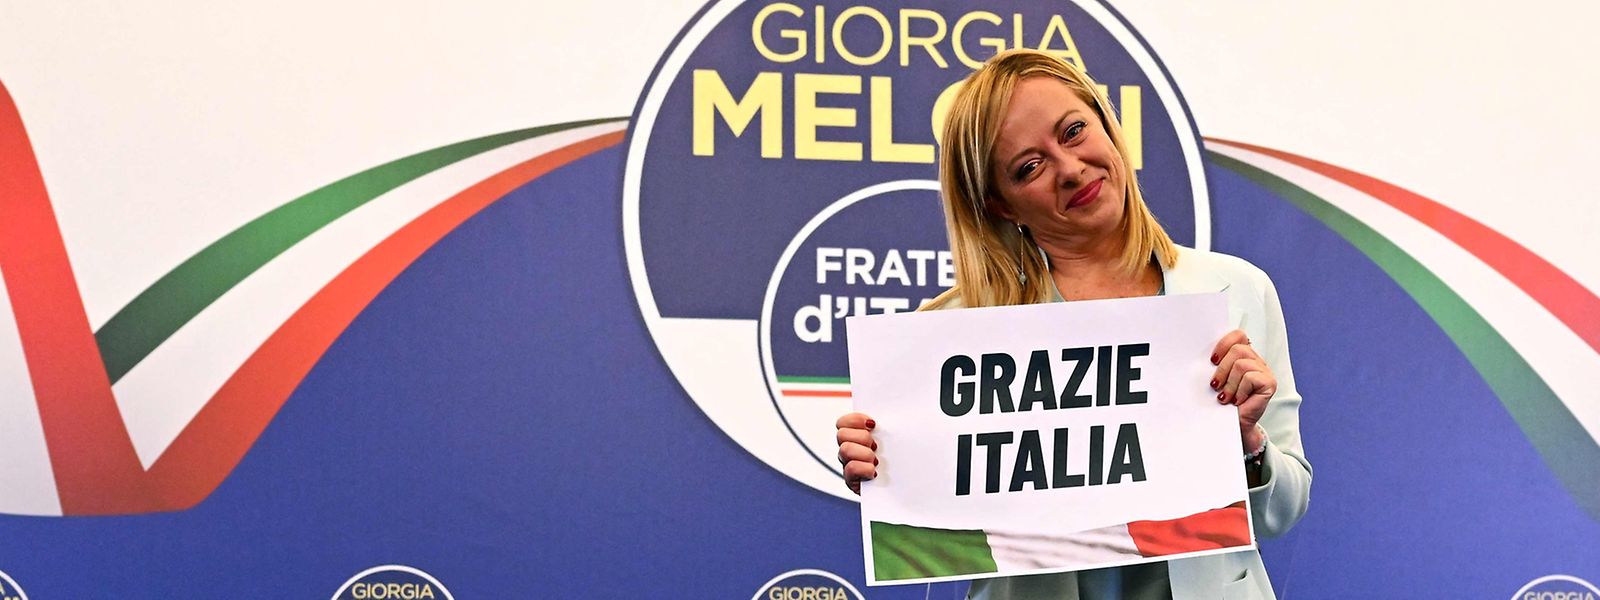 Giorgia Meloni dürfte die erste Regierungschefin von Italien werden.